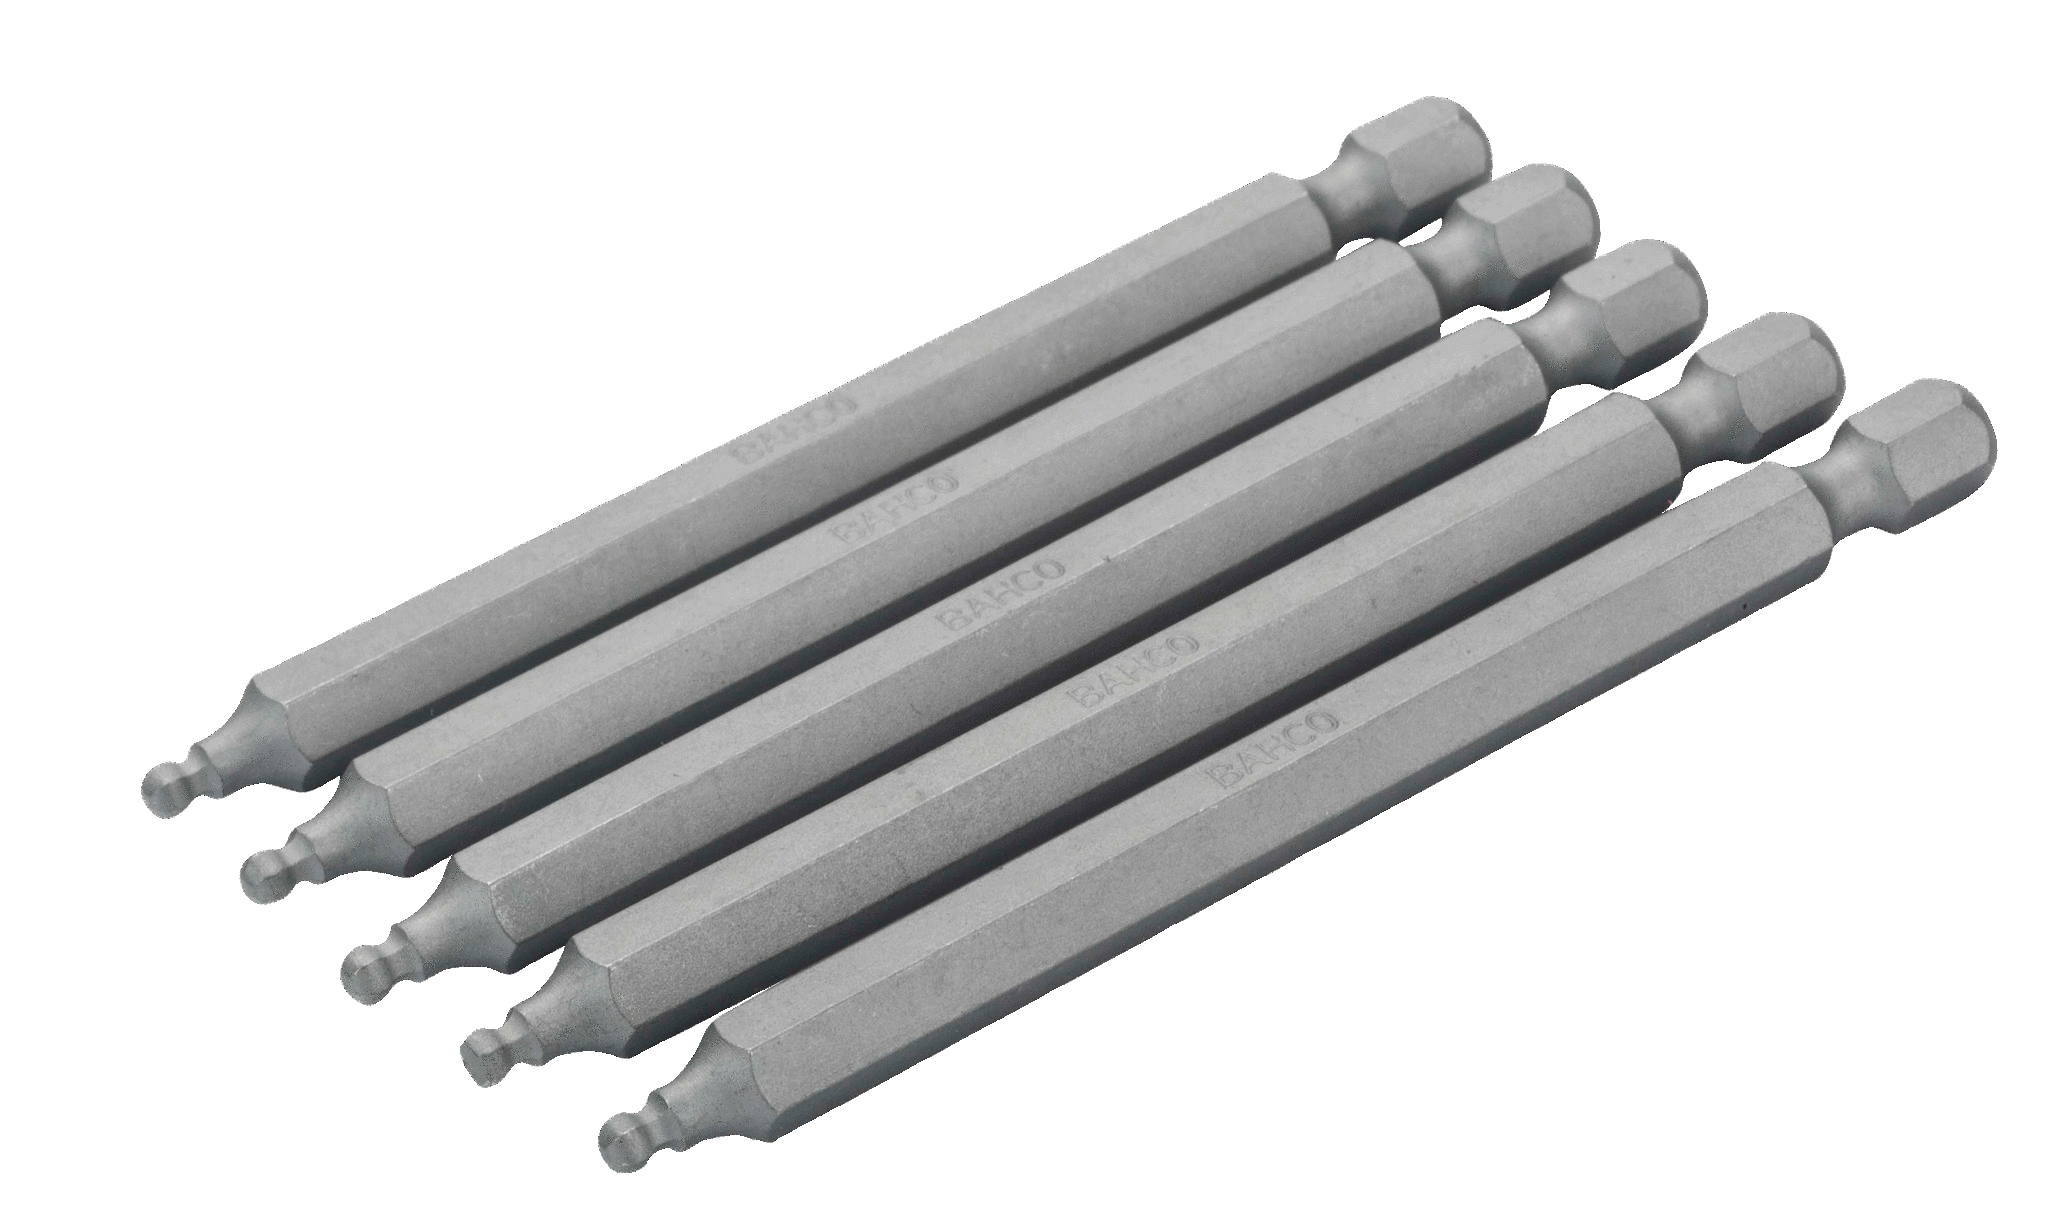 Шестигранные биты с шаровым наконечником для стандартных отверток, метрические размеры, 89 мм BAHCO 59S/H4BALL